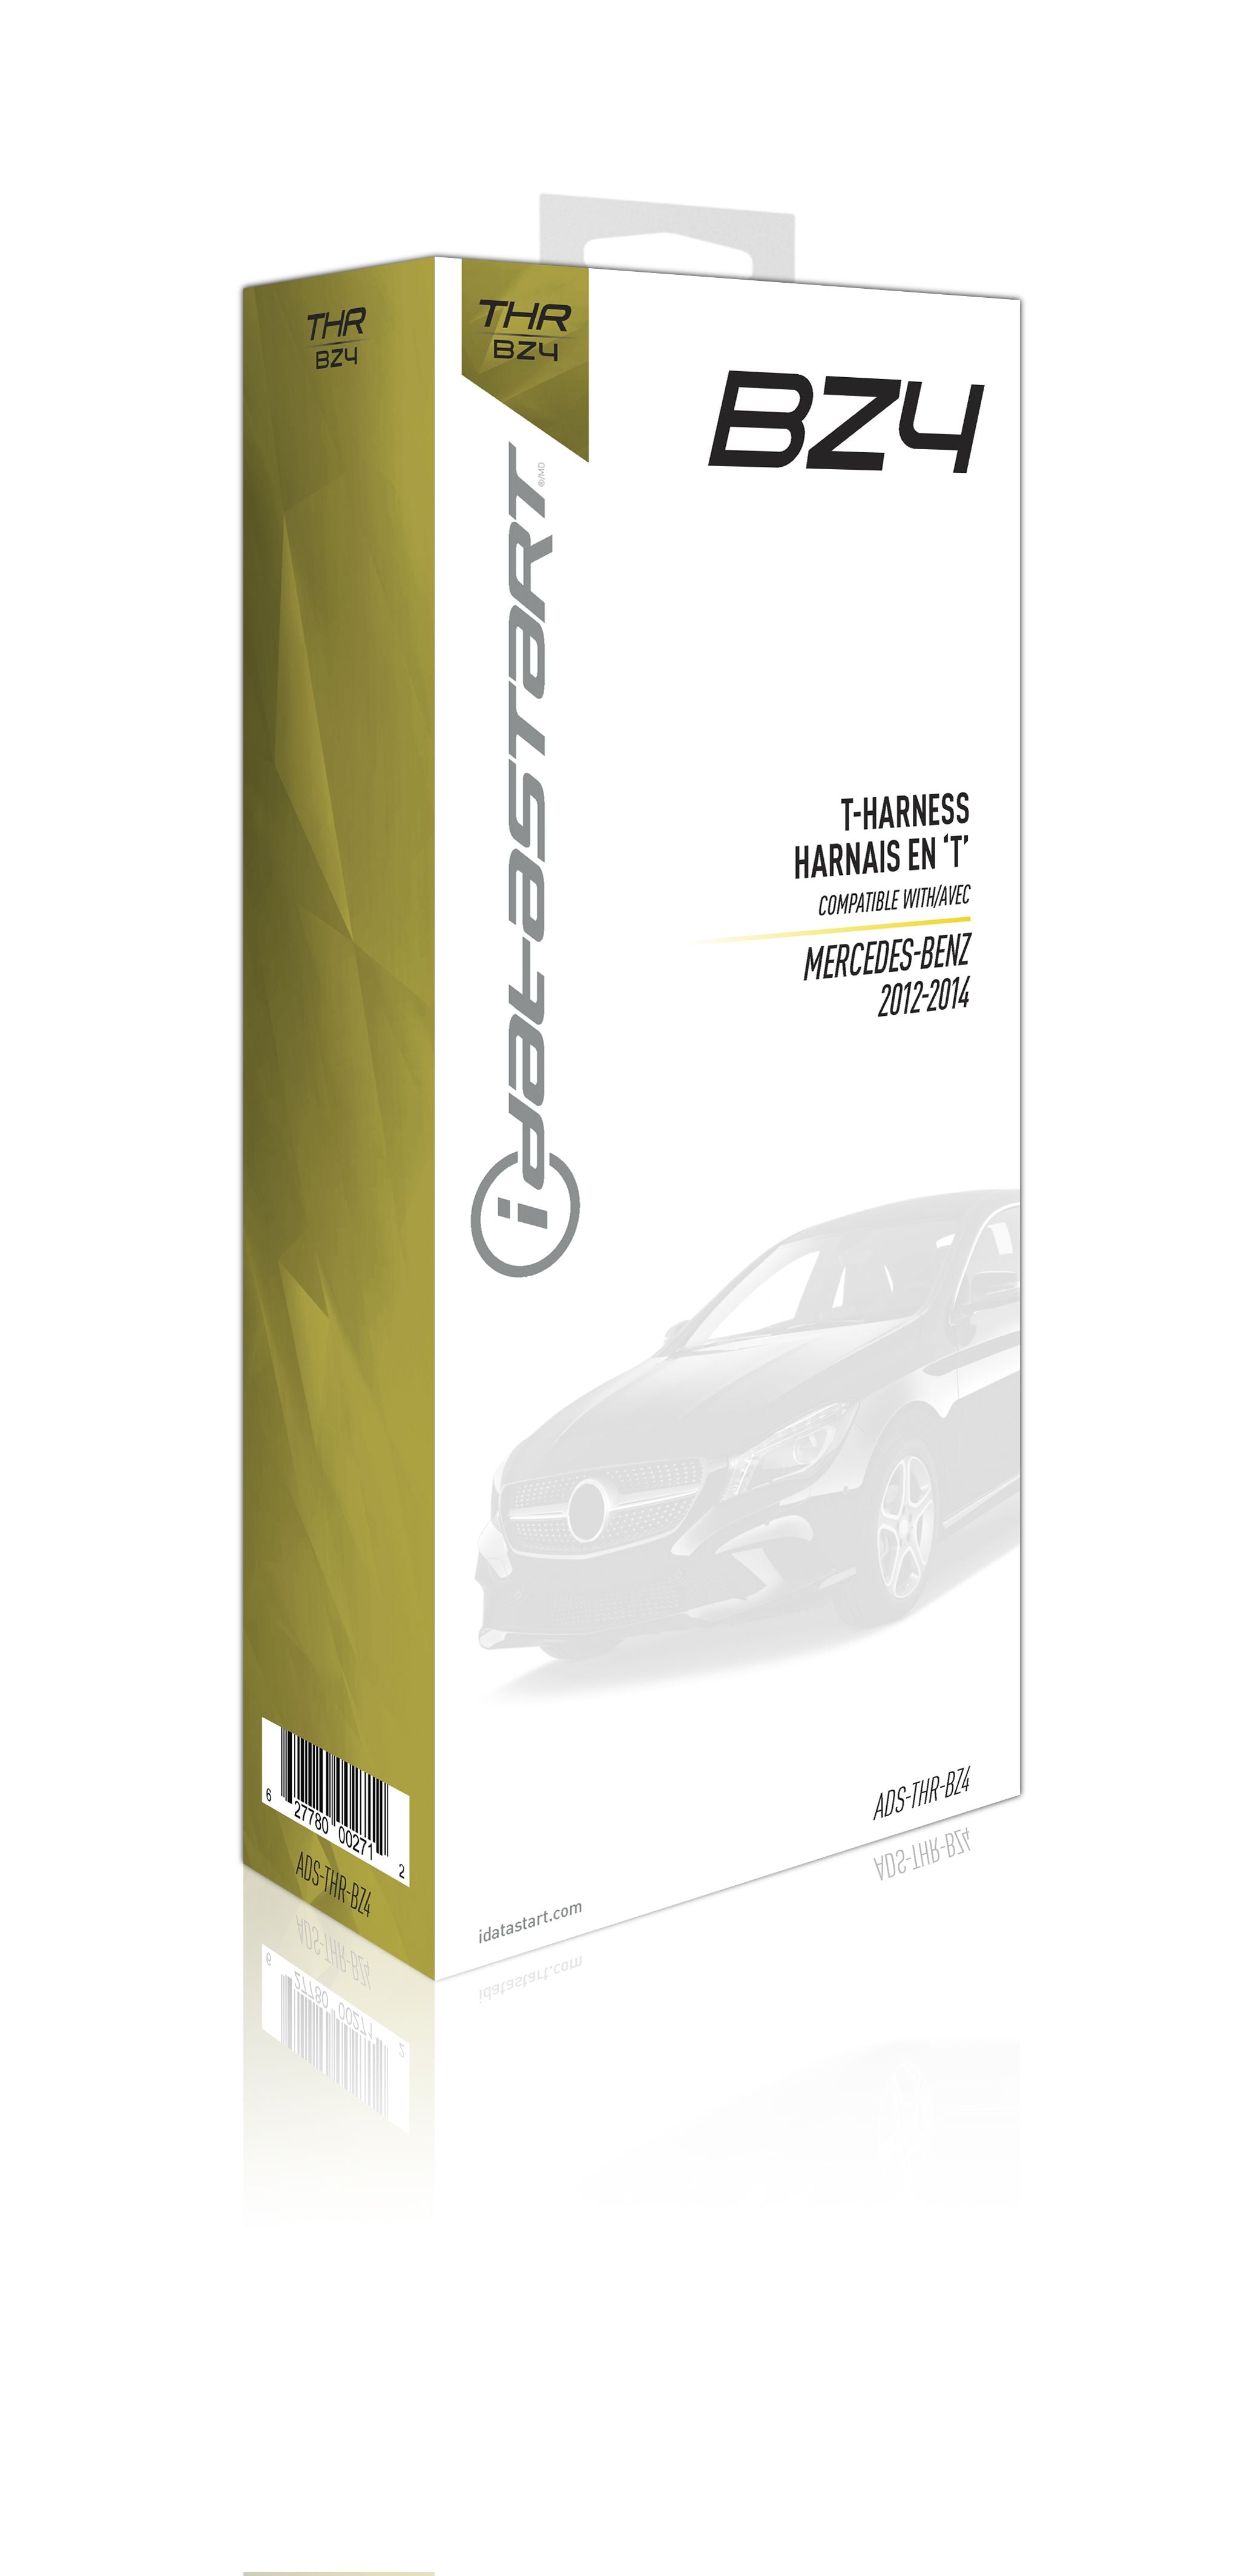 iDatastart ADS-THR-BZ4 - Mercedes-Benz T-Harness for CMBMXA0